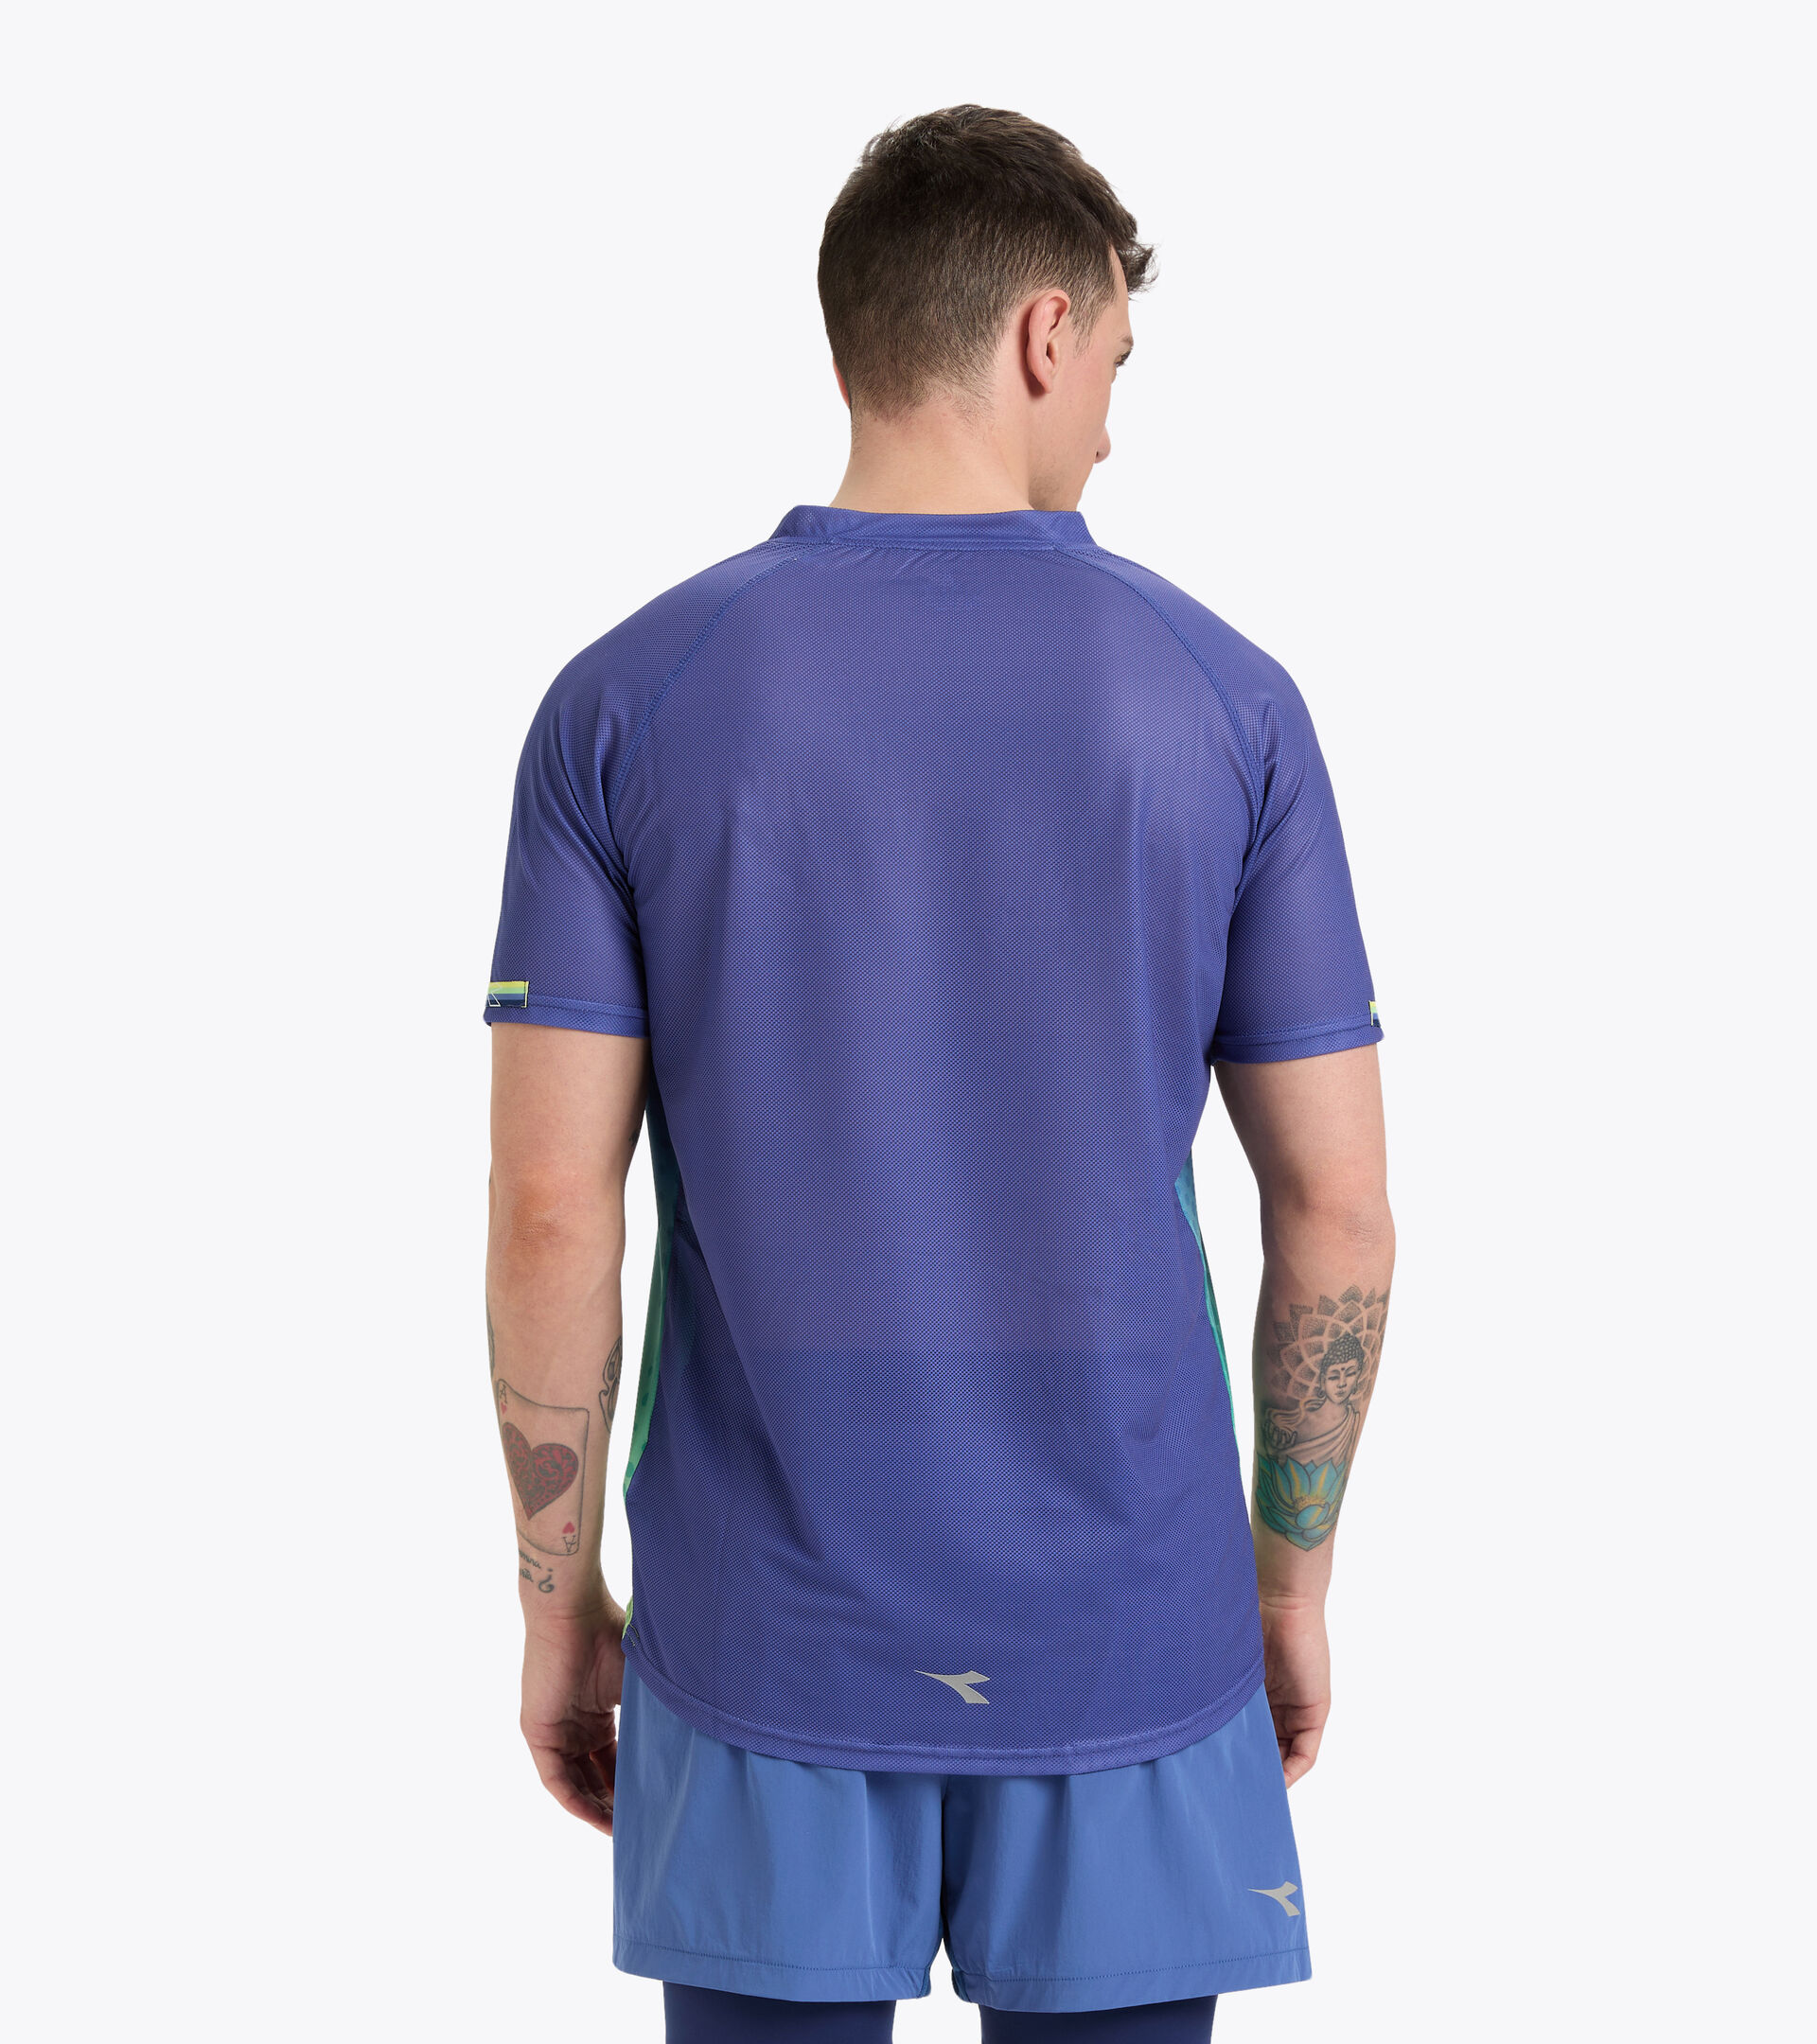 Camiseta para correr superligera - Hombre SUPER LIGHT SS T-SHIRT BE ONE WATERY MURRINA - Diadora